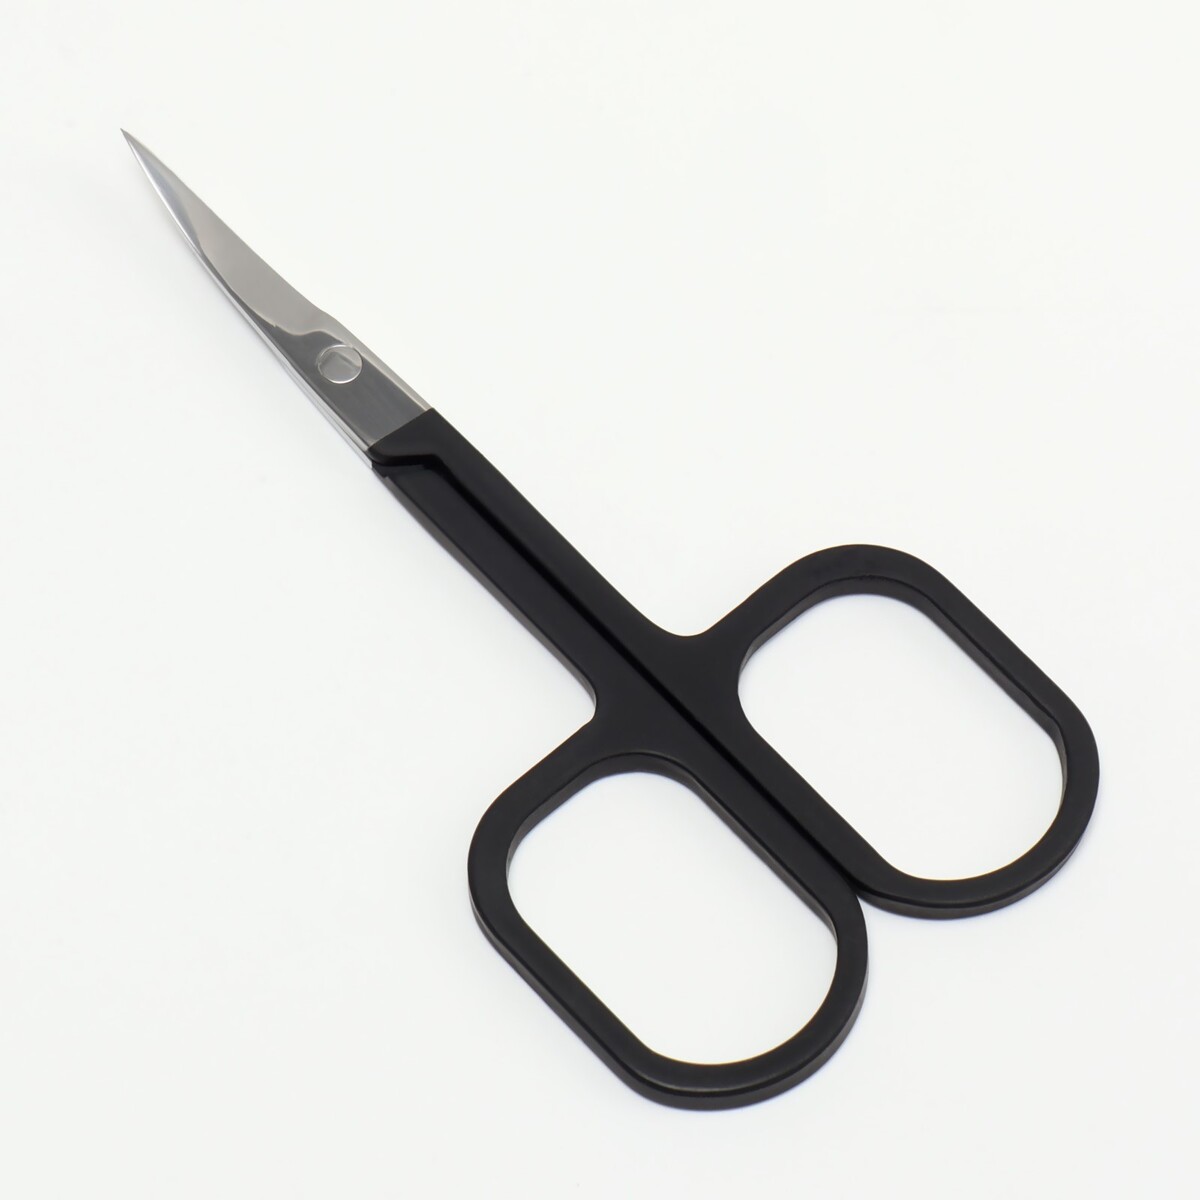 Ножницы маникюрные, узкие, загнутые, с прорезиненными ручками, 9 см, цвет серебристый/черный ножницы маникюрные загнутые 9 см серебристый